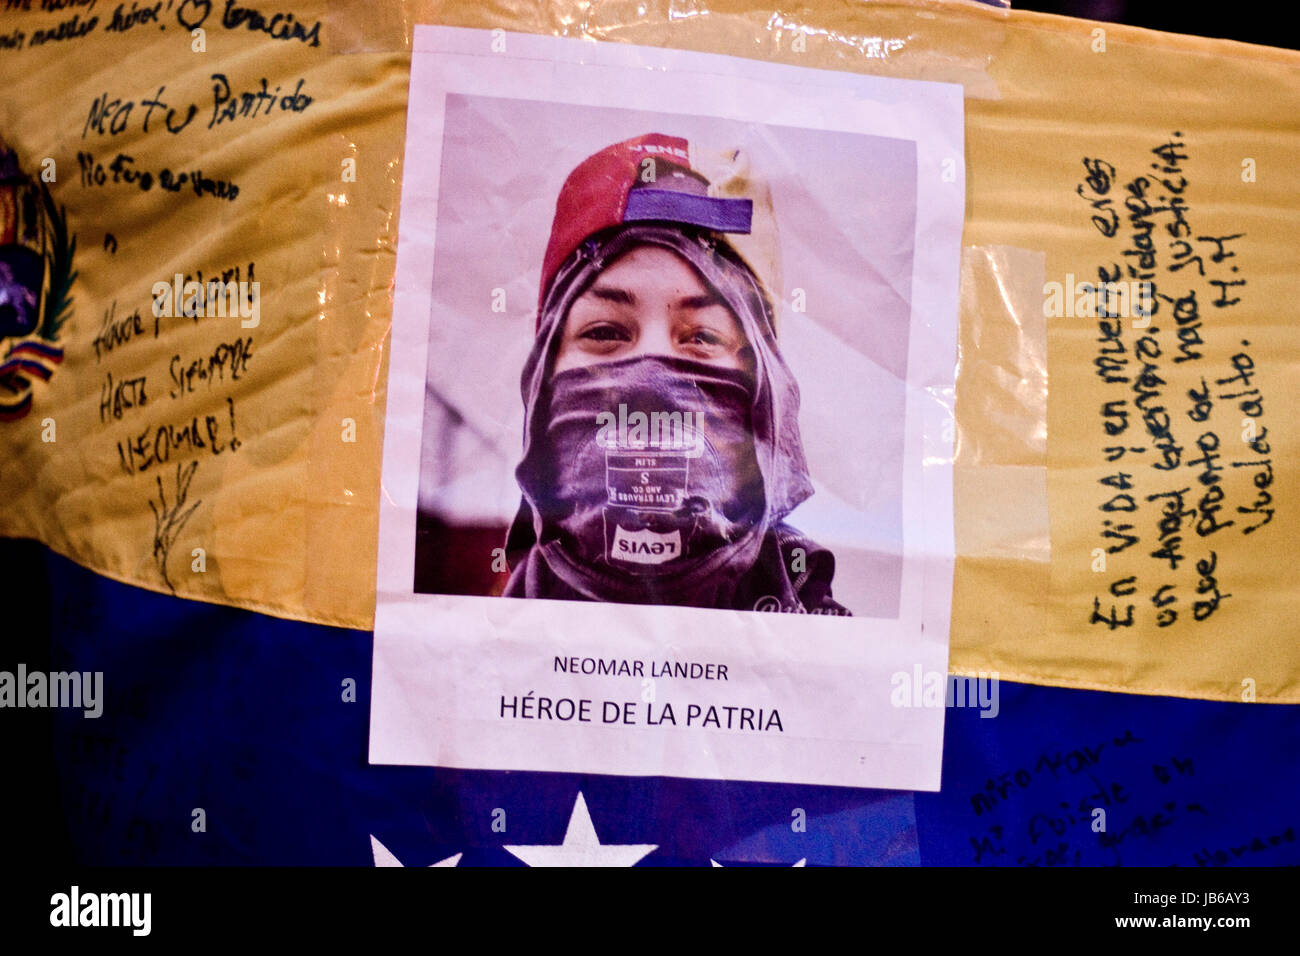 Una imagen de neomar lander, un adolescente que murió durante una protesta contra el gobierno de Nicolás Maduro, a través de una bandera de Venezuela. Foto de stock